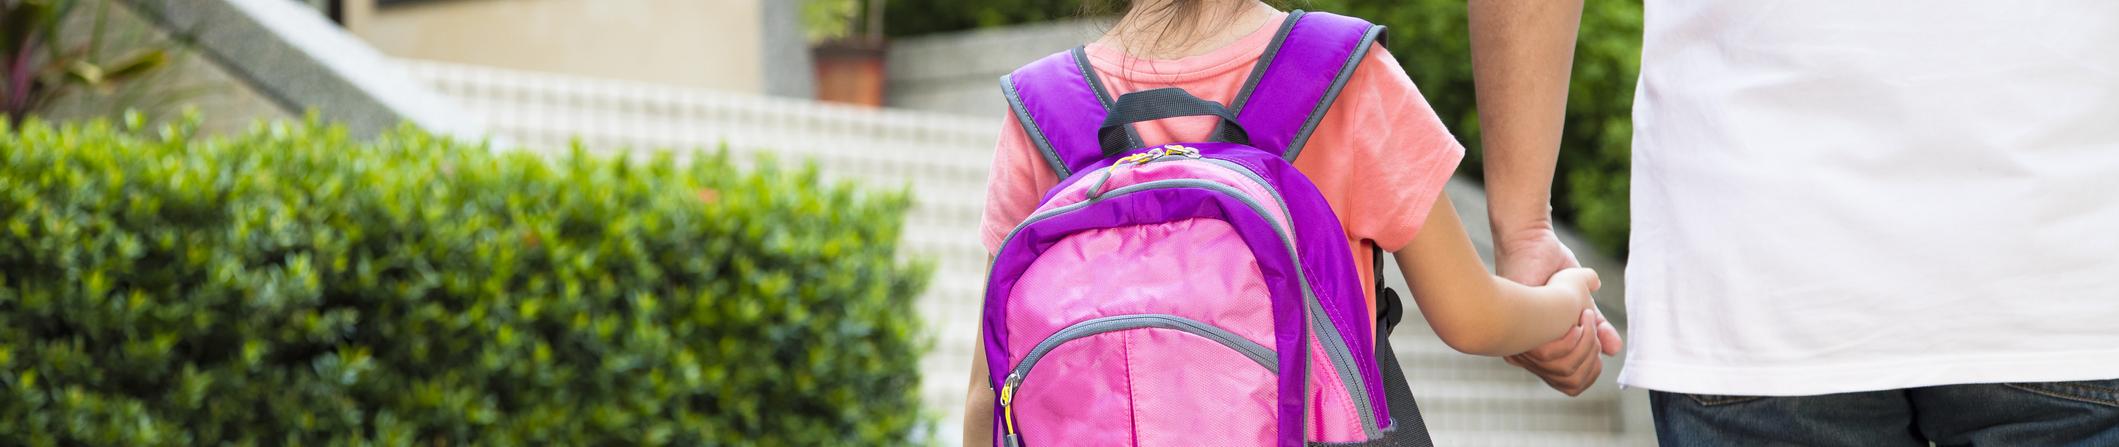 Les comportements à risque des parents sur le chemin de l'école en présence de leurs enfants